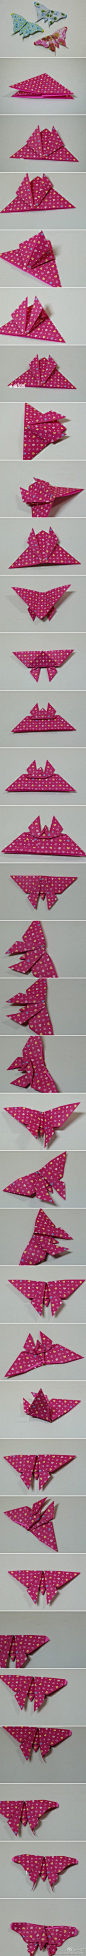 蝴蝶折纸~来学习下蝴蝶的折法！